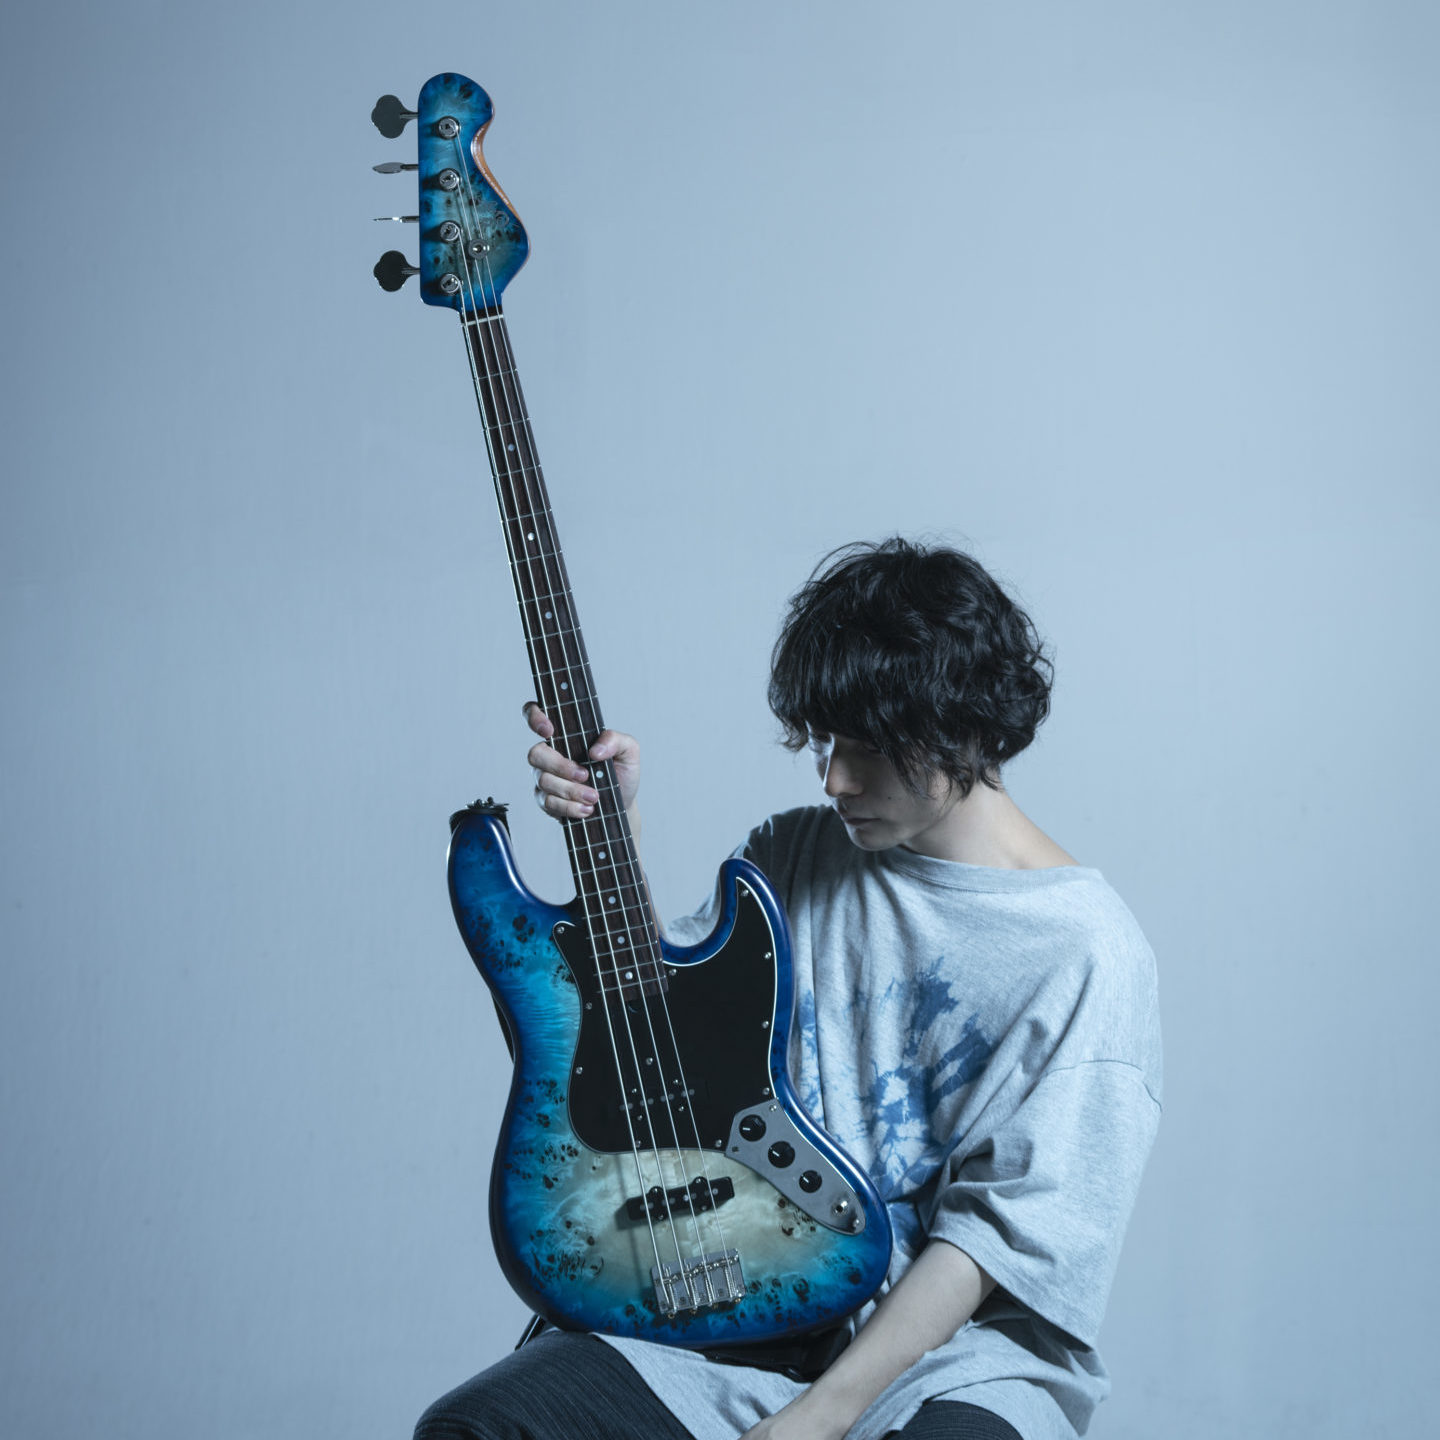 清風 Coll Ex Aint Sago New Material Guitars